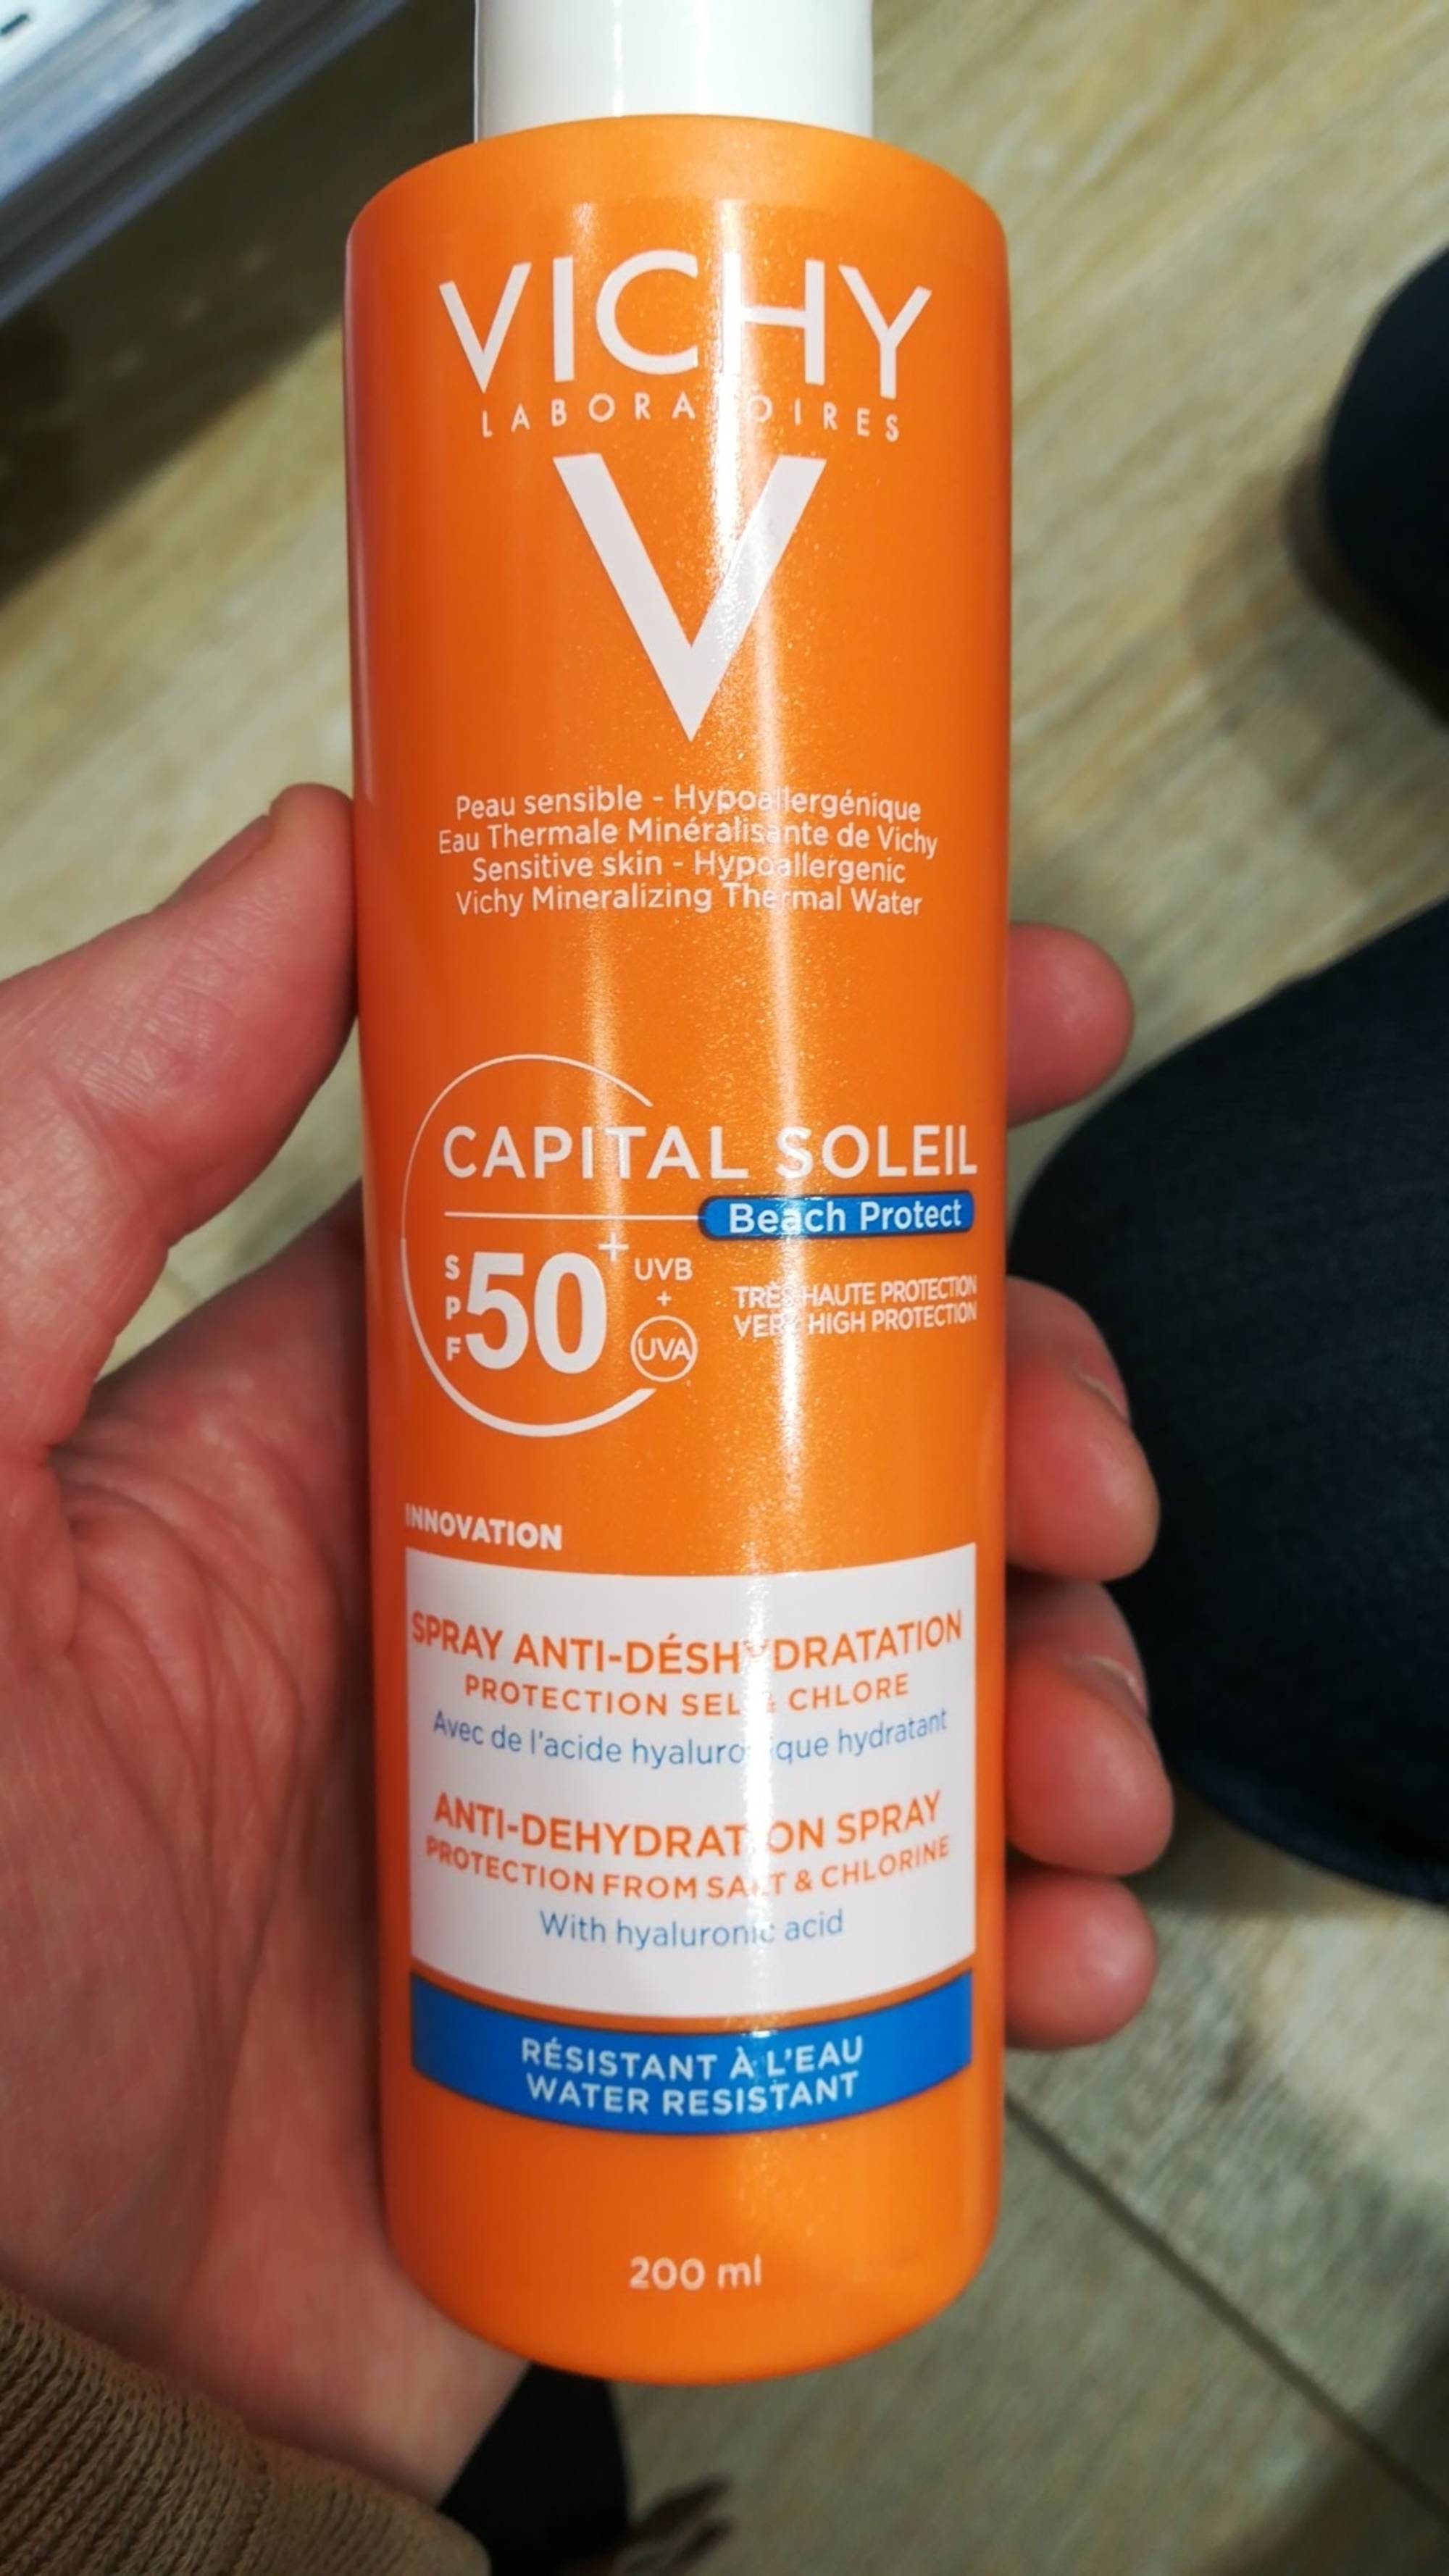 VICHY - Capital soleil - Spray anti-déshydratation SPF 50+